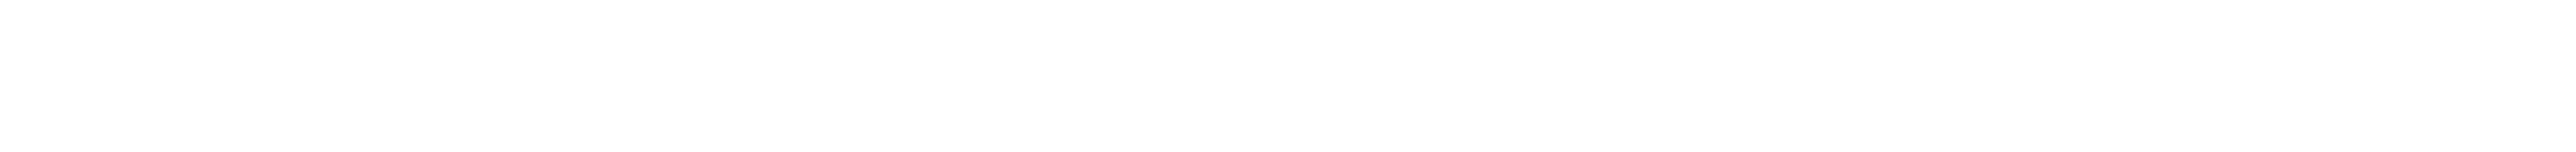 Edificio Cumbres de Santa Maria Logo Horizontal